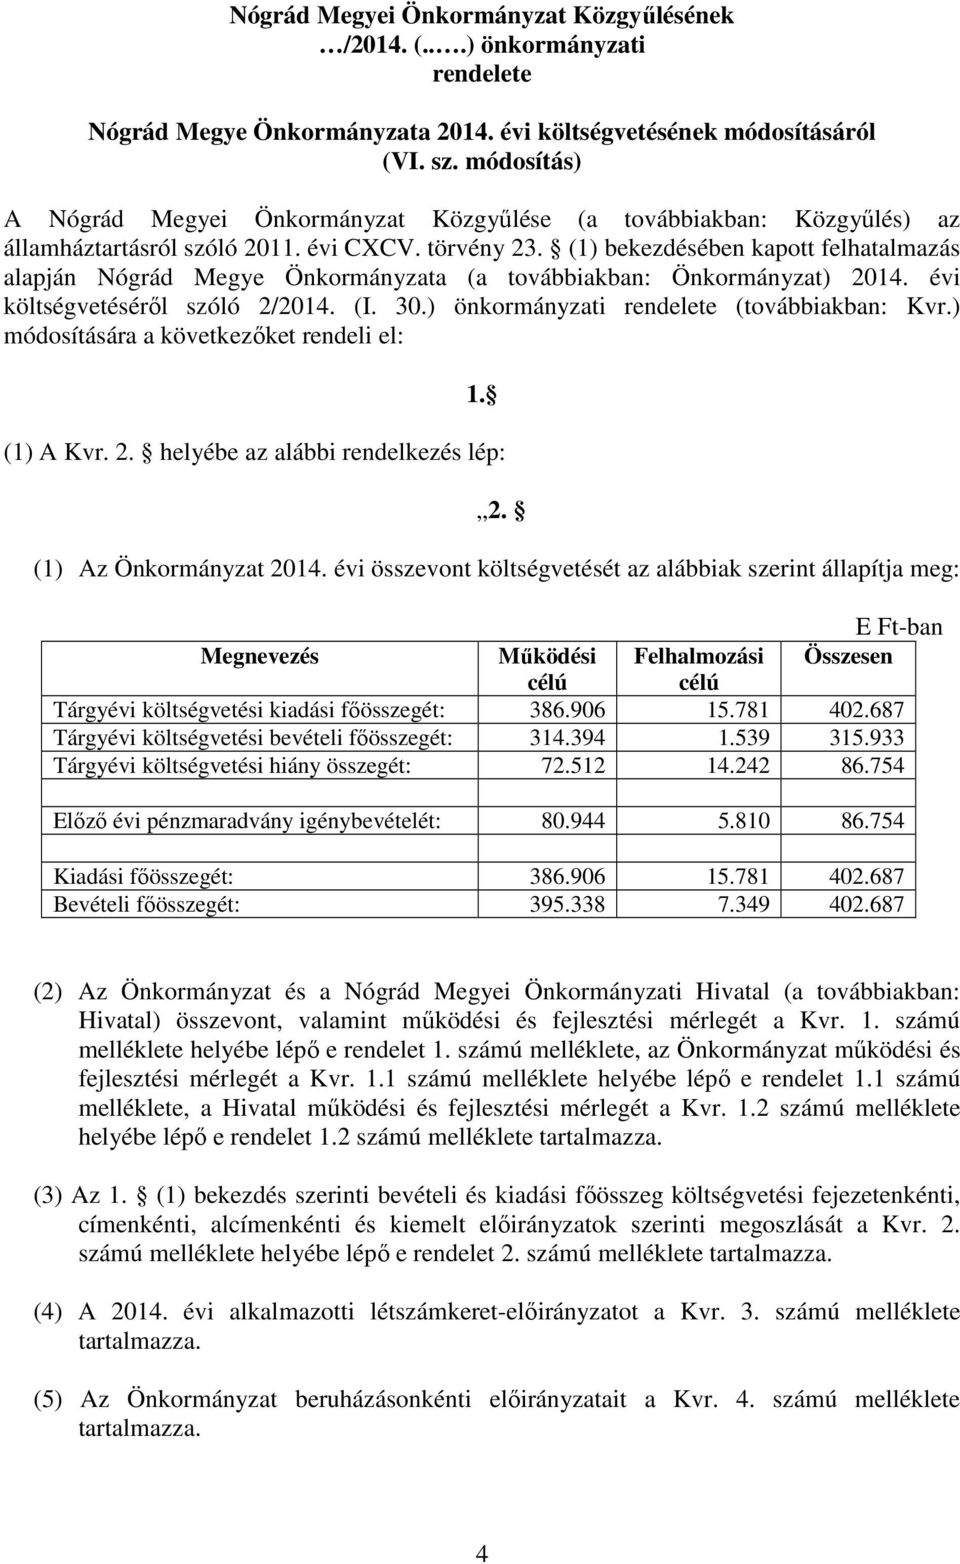 (1) bekezdésében kapott felhatalmazás alapján Nógrád Megye Önkormányzata (a továbbiakban: Önkormányzat) 2014. évi költségvetéséről szóló 2/2014. (I. 30.) önkormányzati rendelete (továbbiakban: Kvr.